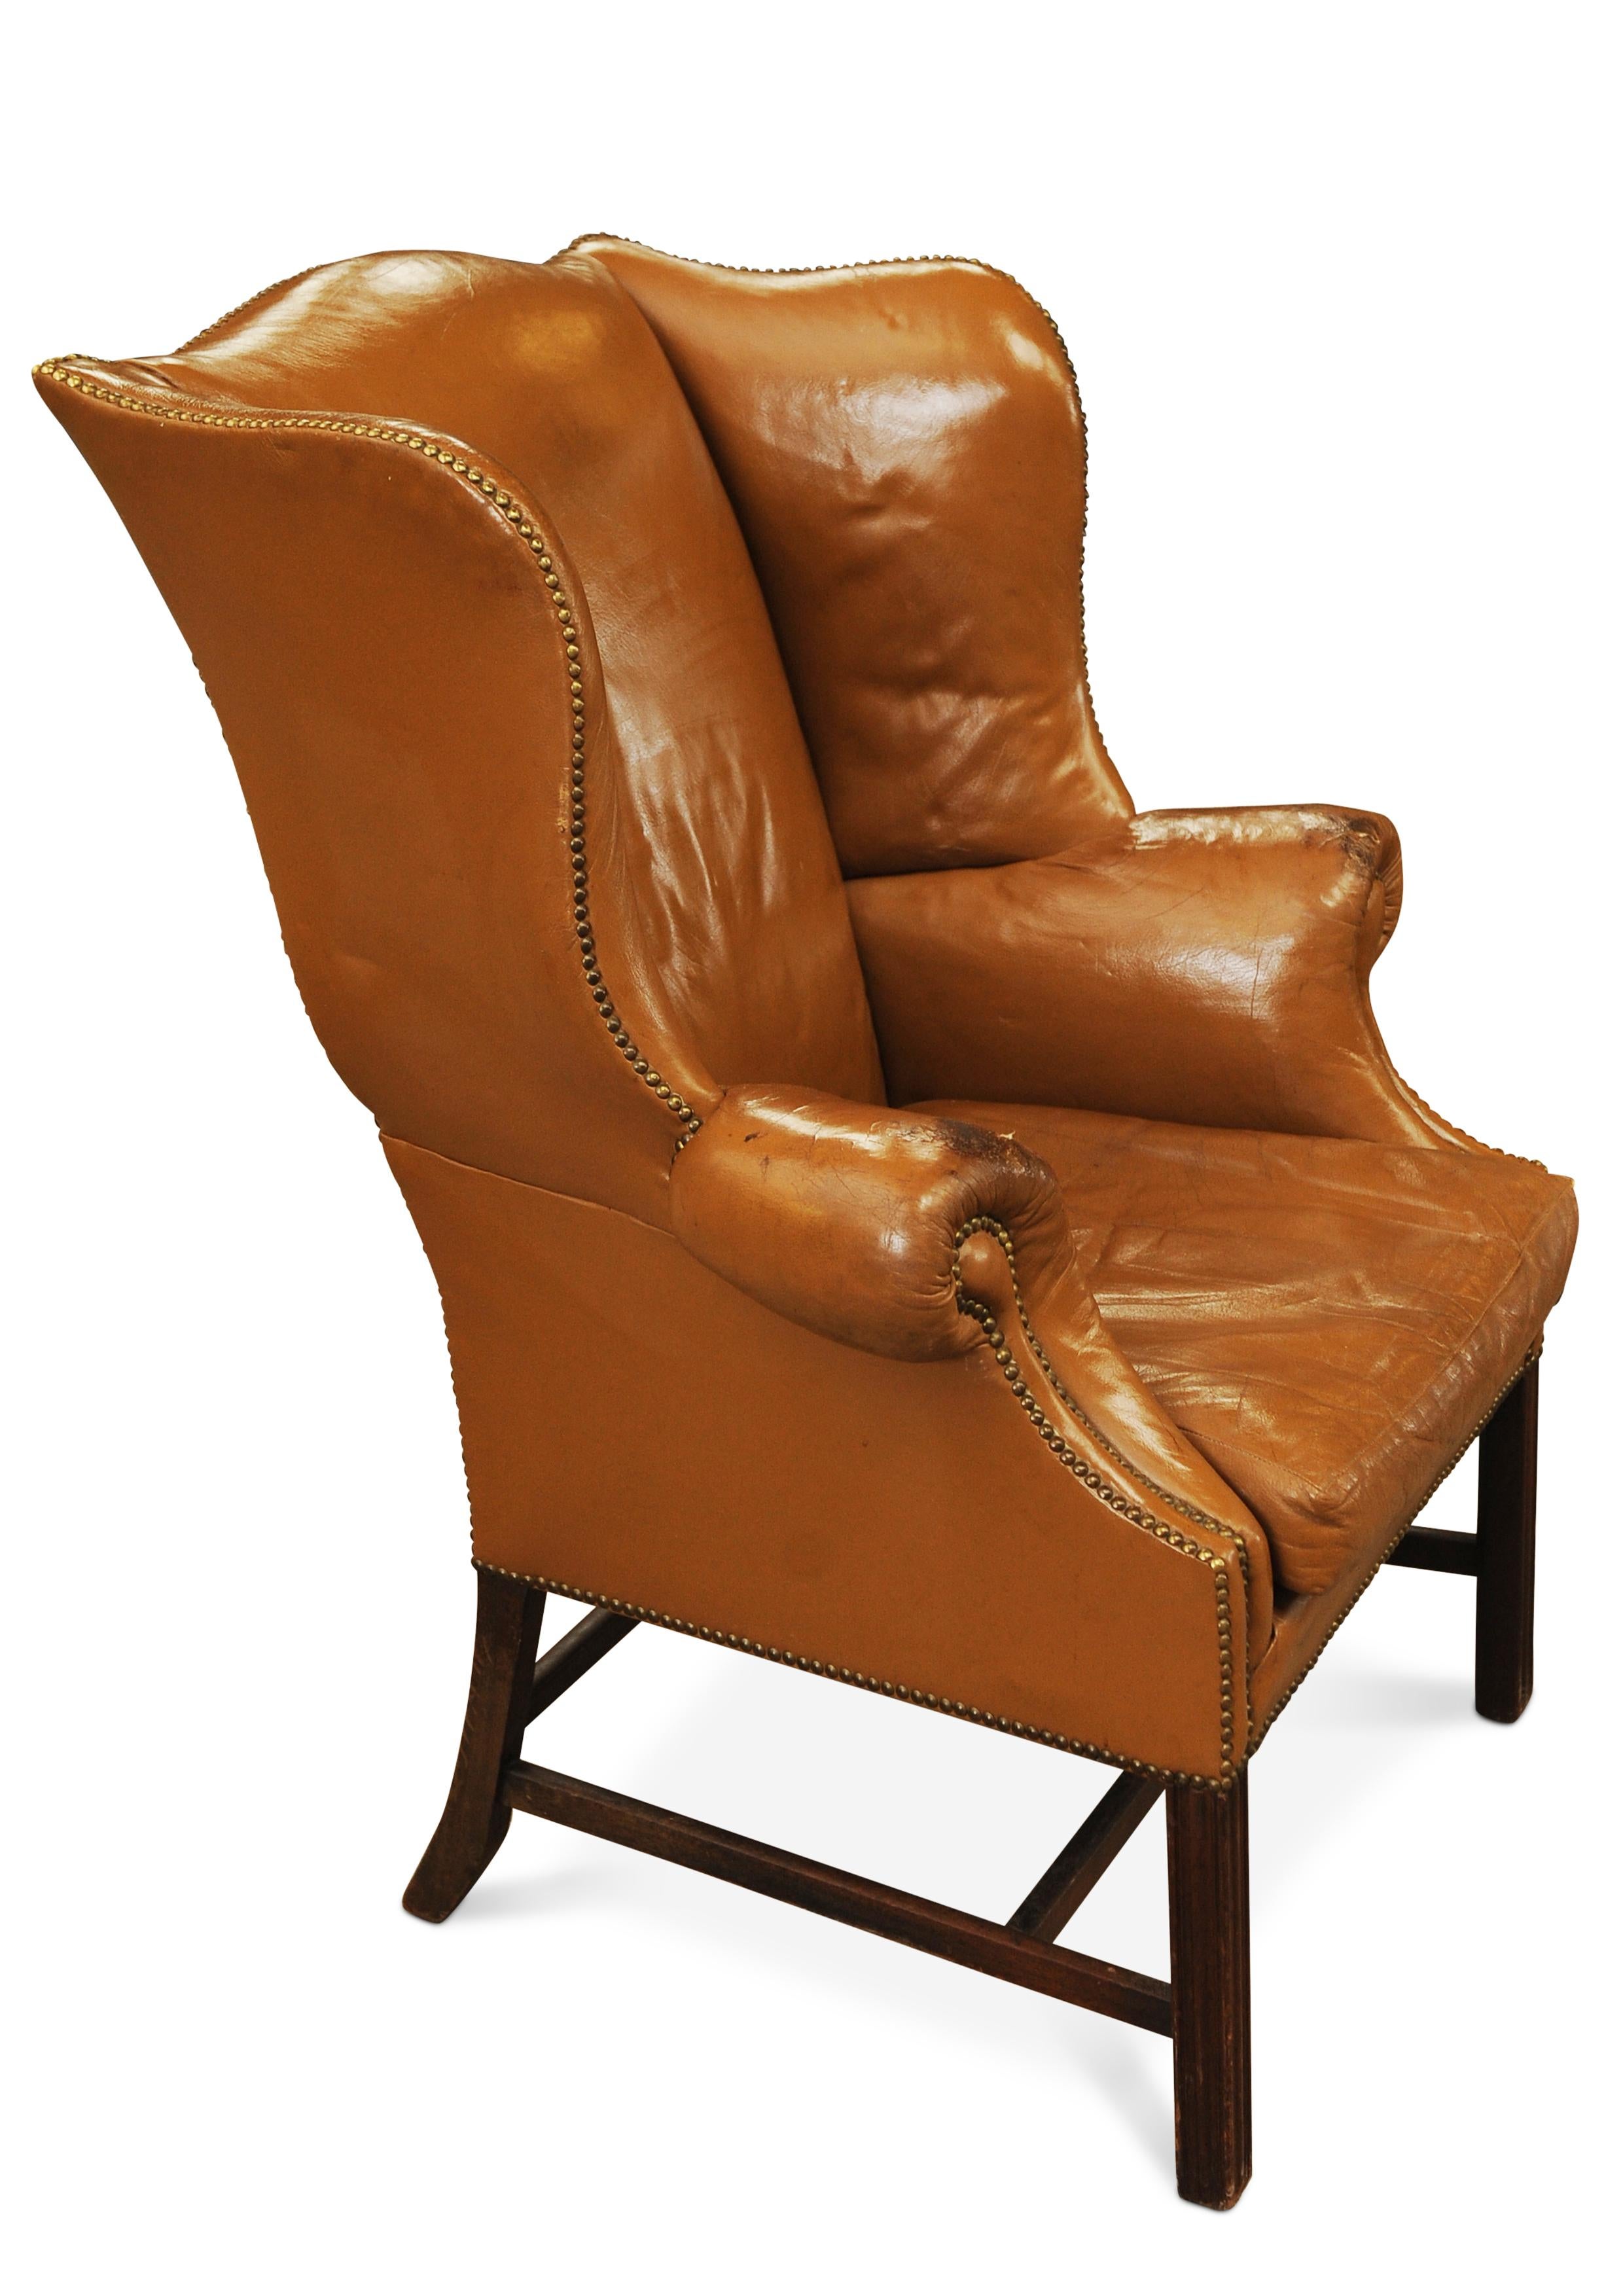 19. Jahrhundert georgianischen Mahagoni und Tan Leder Flügelrücken Sessel mit Messing beschlagenen Grenze.

Mit einer geformten Rückenlehne mit nach außen gerollten Armen, die sich über quadratischen, kannelierten Vorderbeinen erheben, geformten